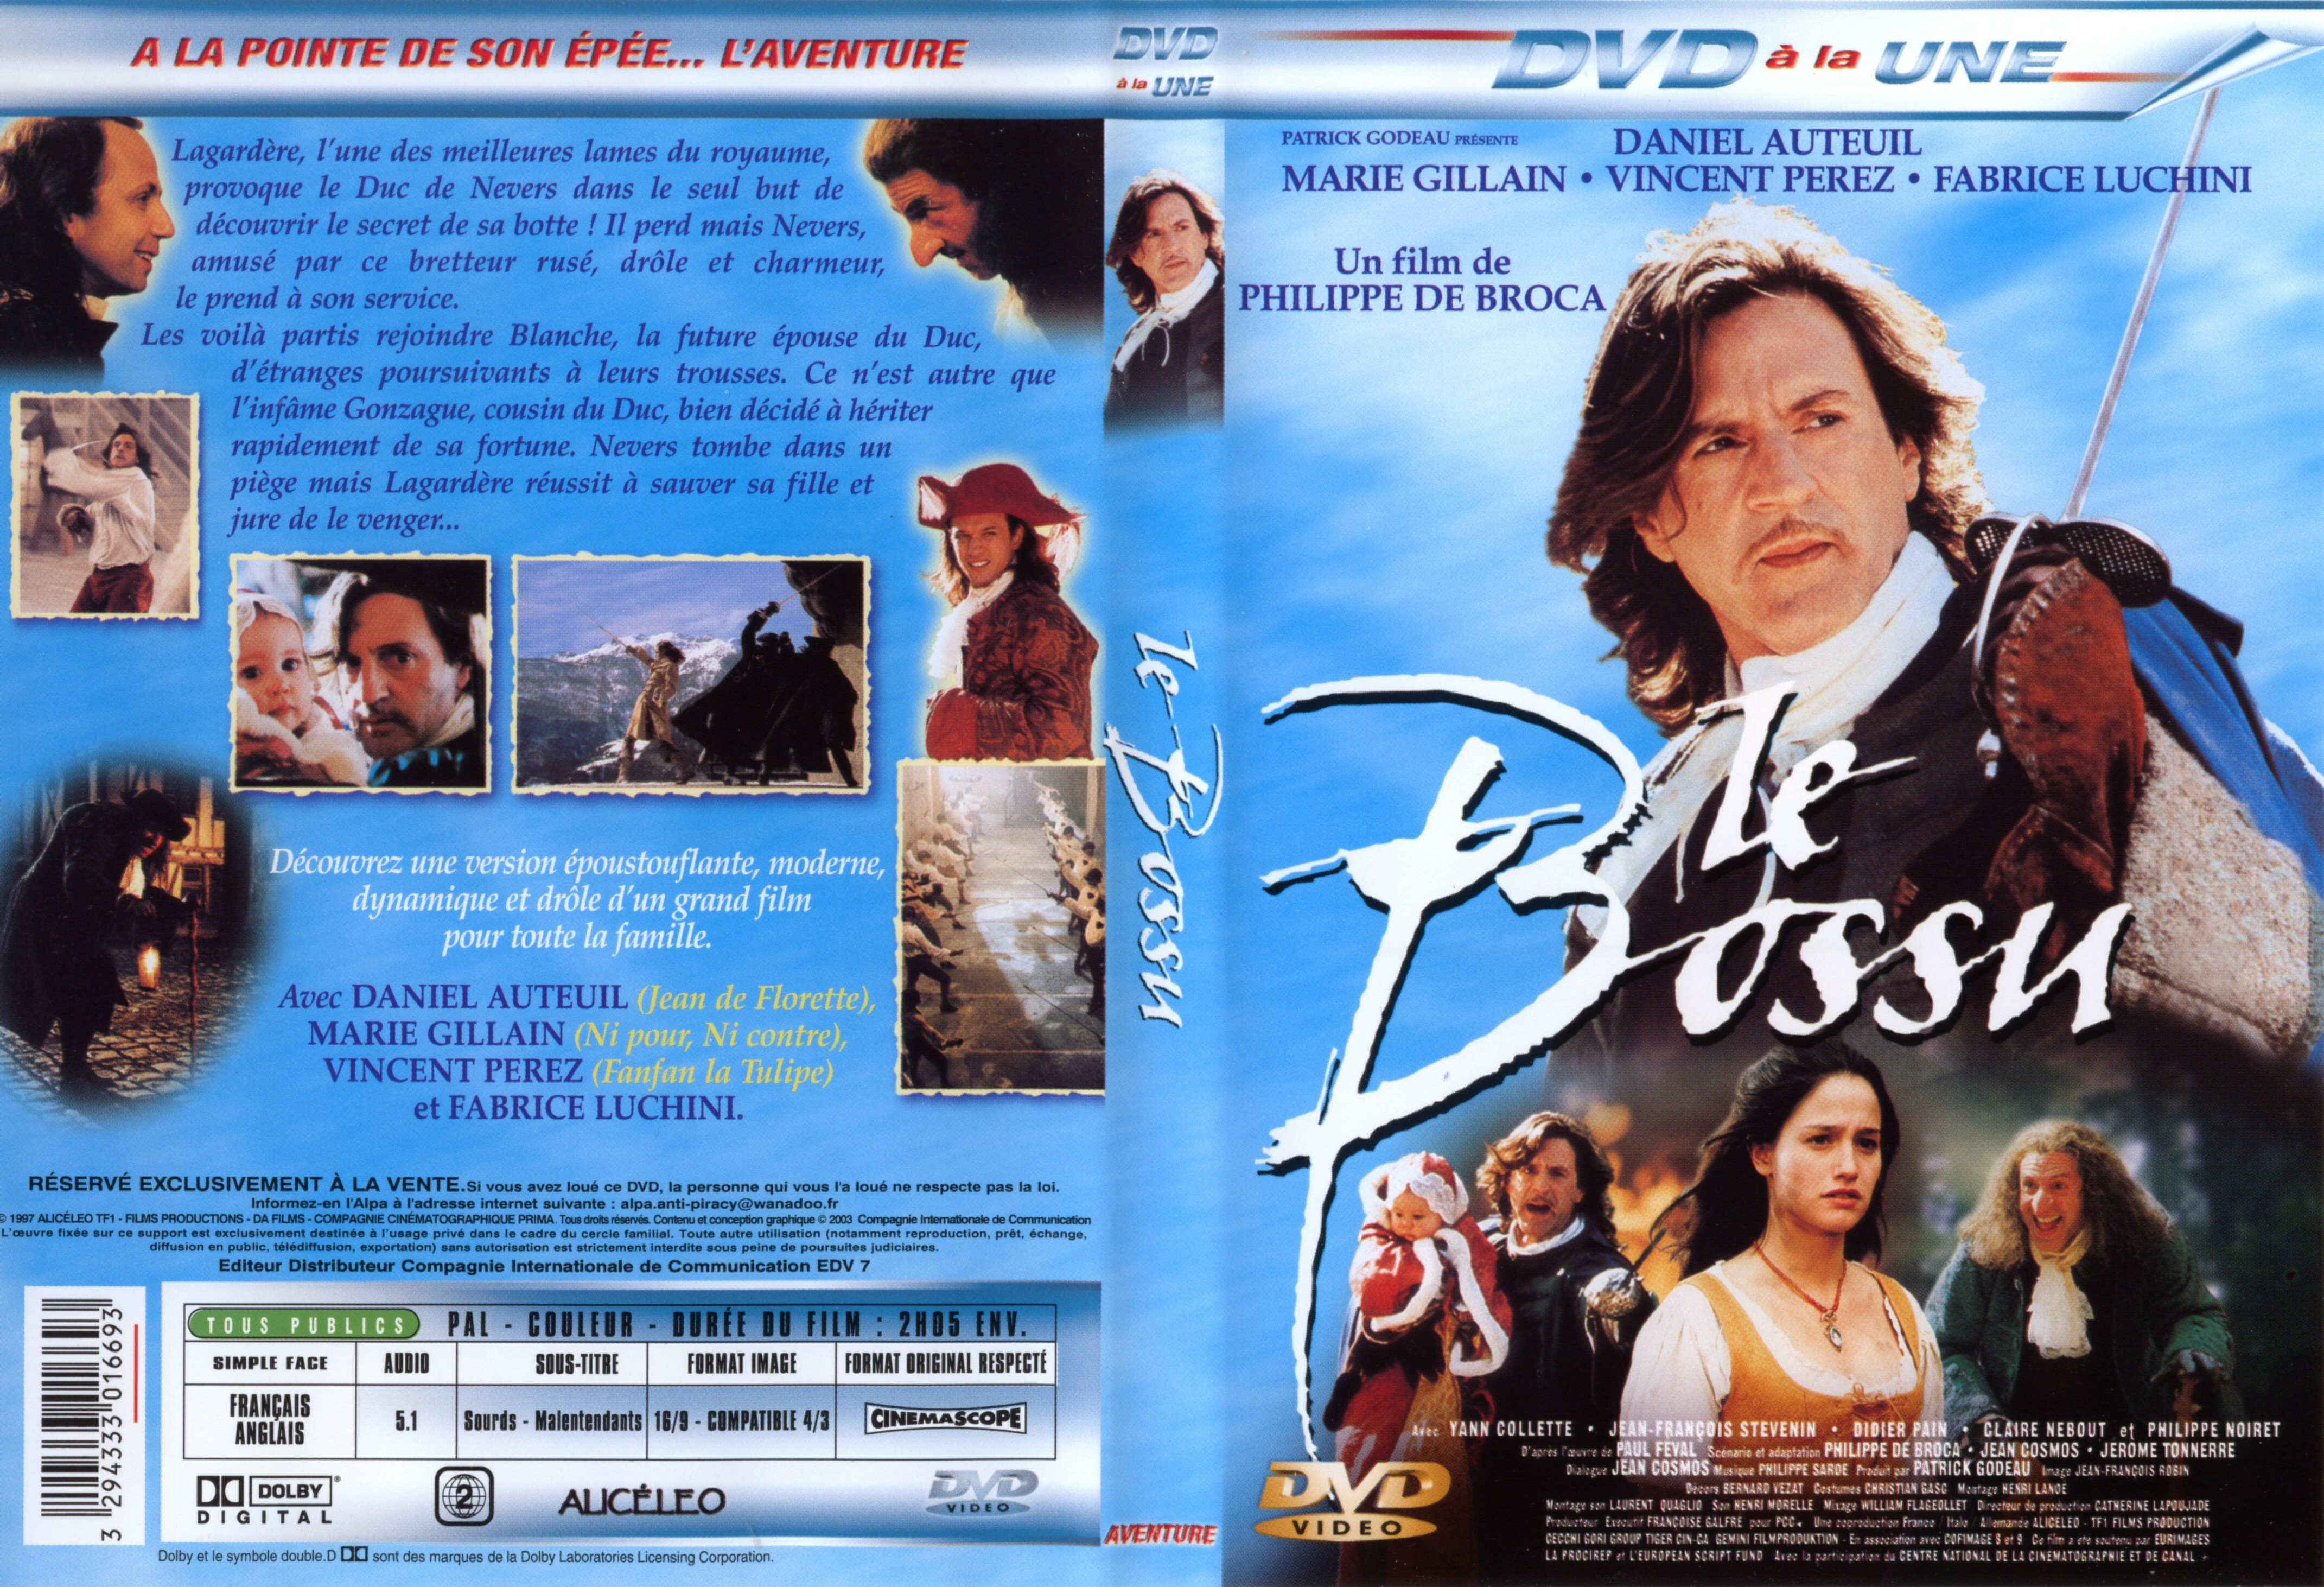 Jaquette DVD Le bossu (Daniel Auteuil)